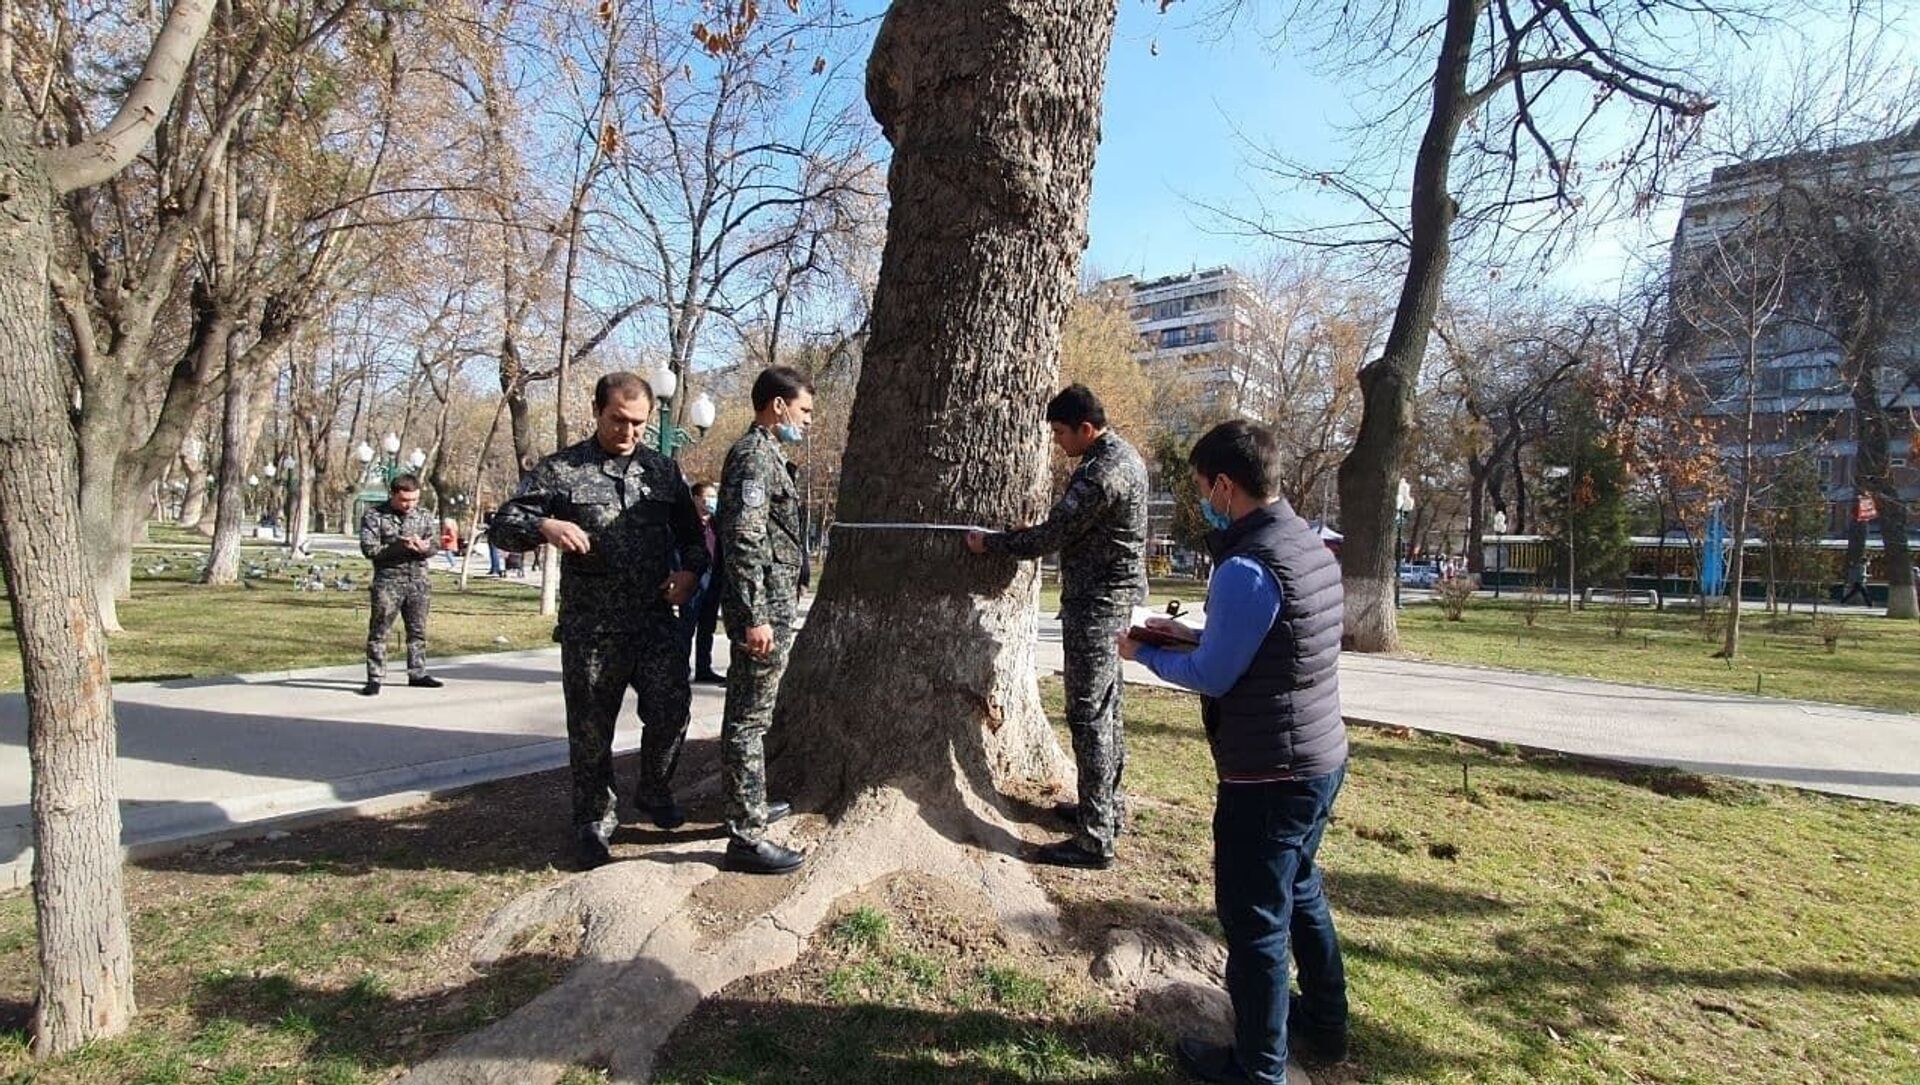 Инвентаризация деревьев в парке около Голубых куполов - Sputnik Узбекистан, 1920, 05.02.2021